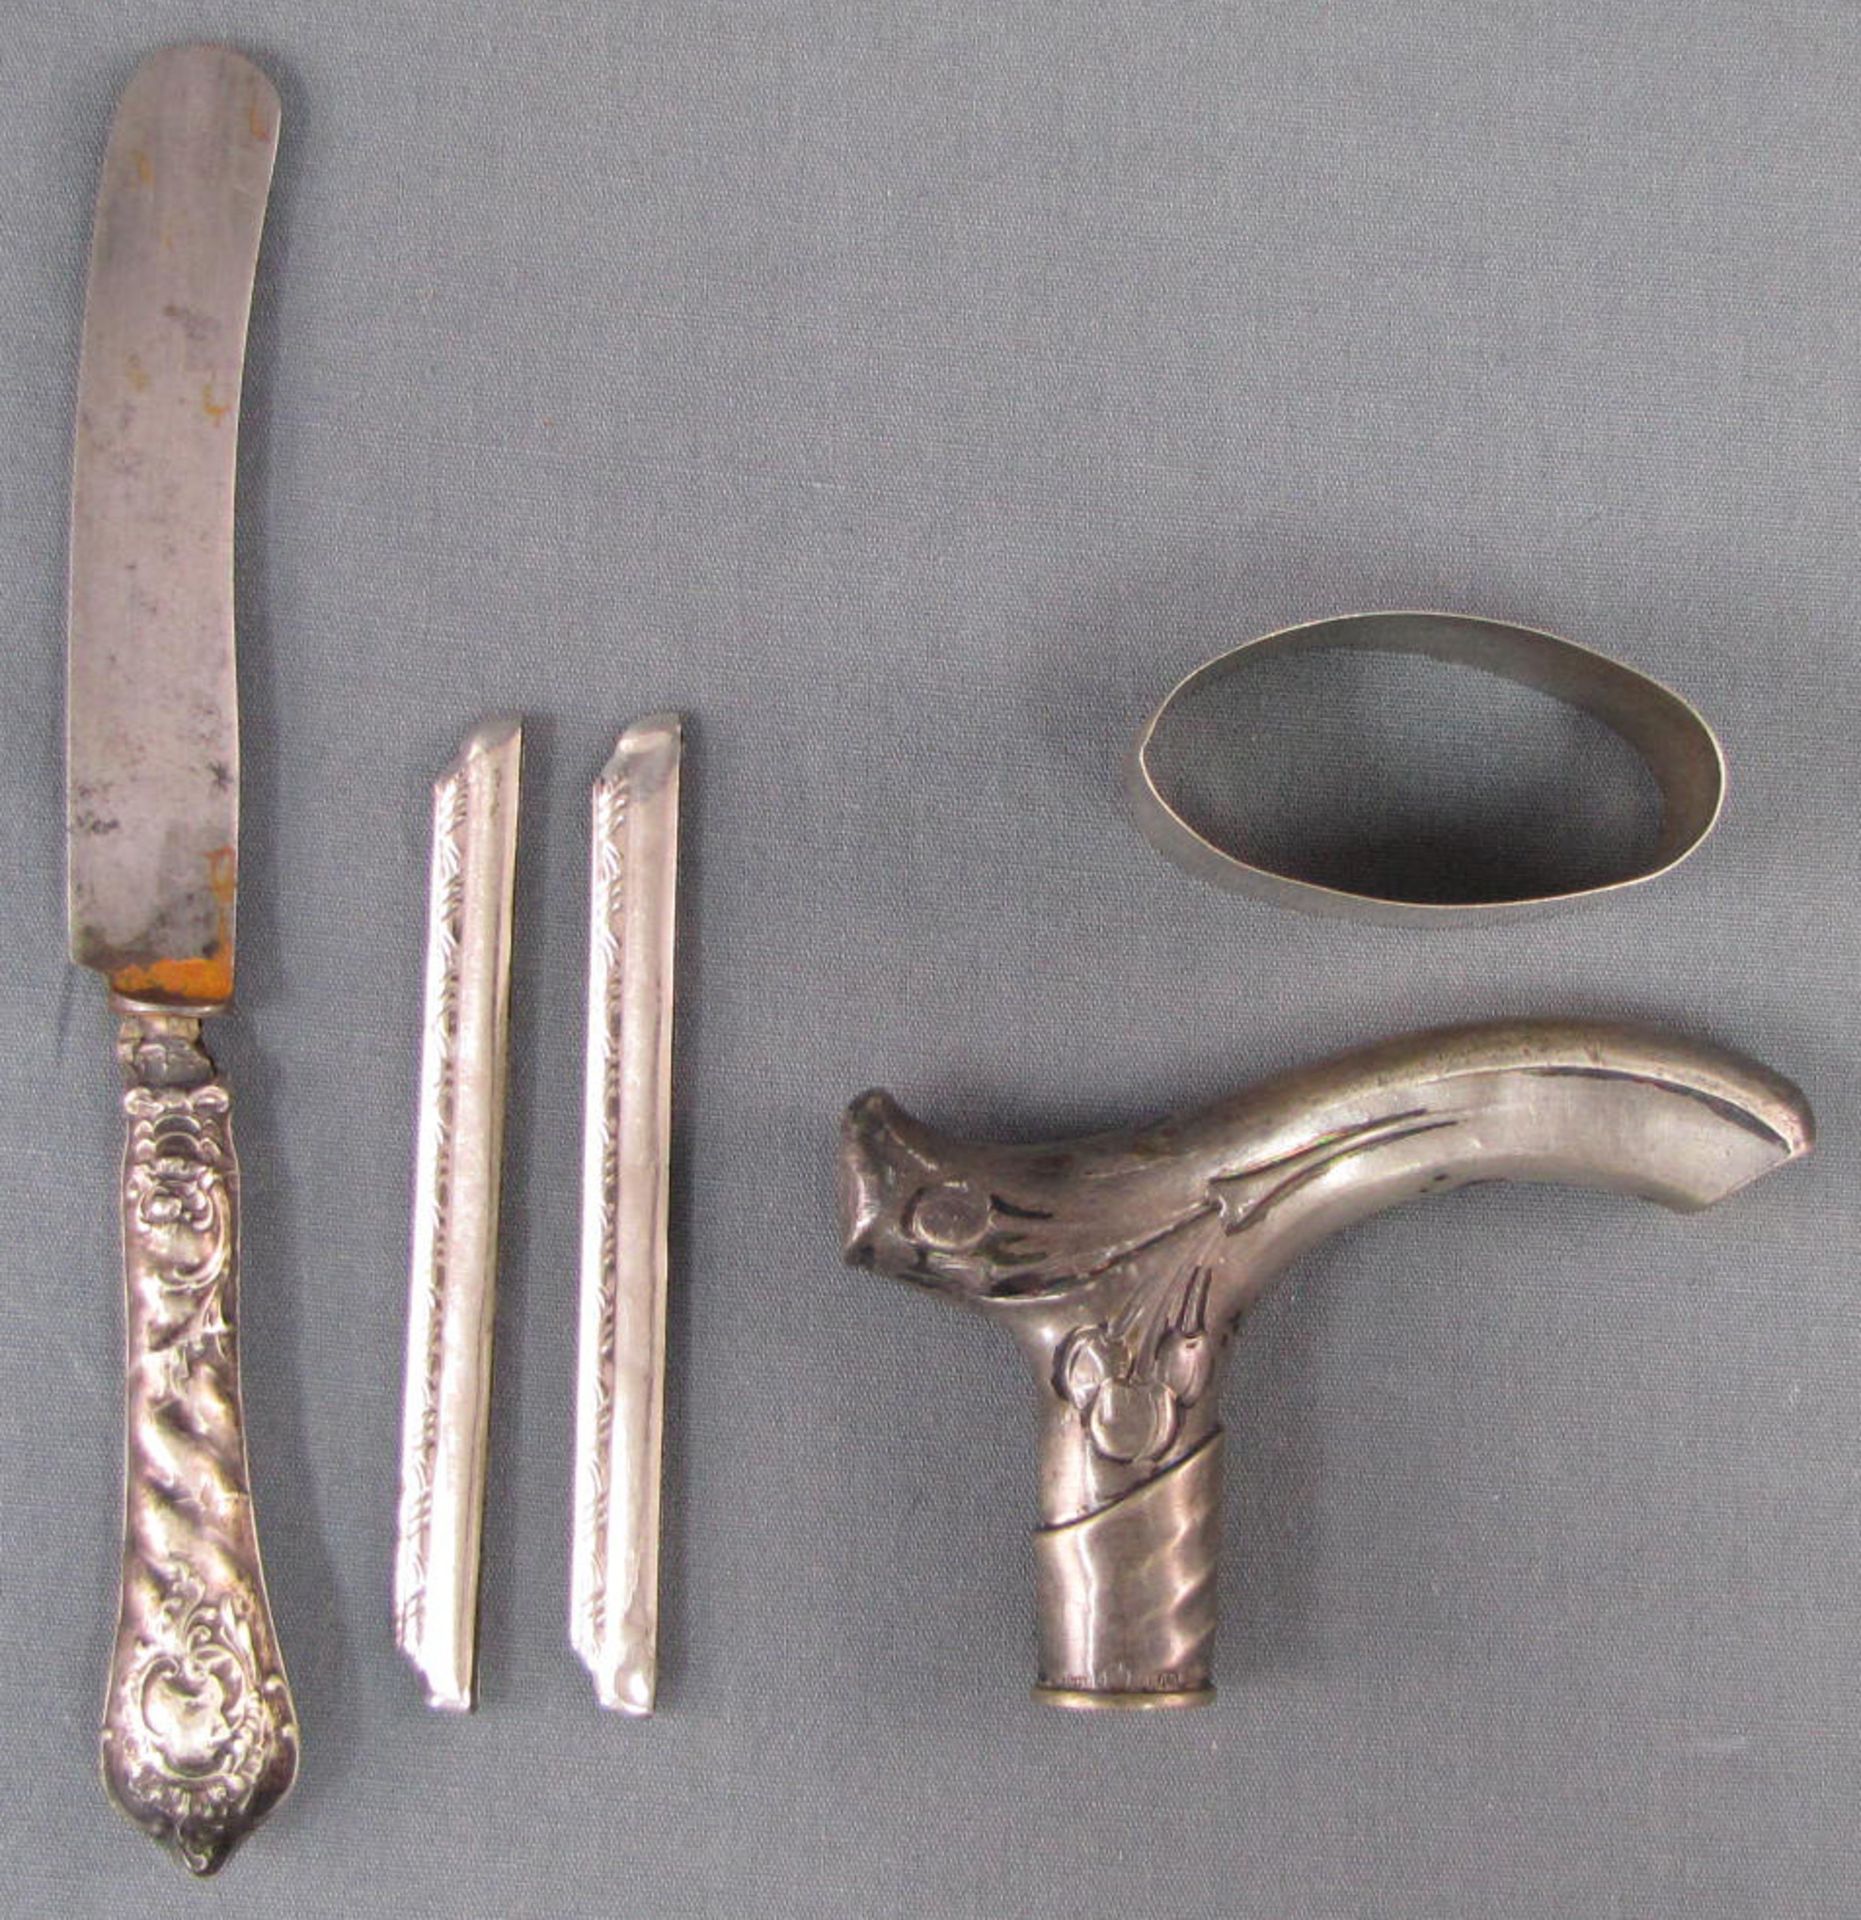 5 Teile Silber.Bis 21 cm. Messer, Gehstockknauf, Serviettenring, 2 Kammrücken.5 objects silver.Up to